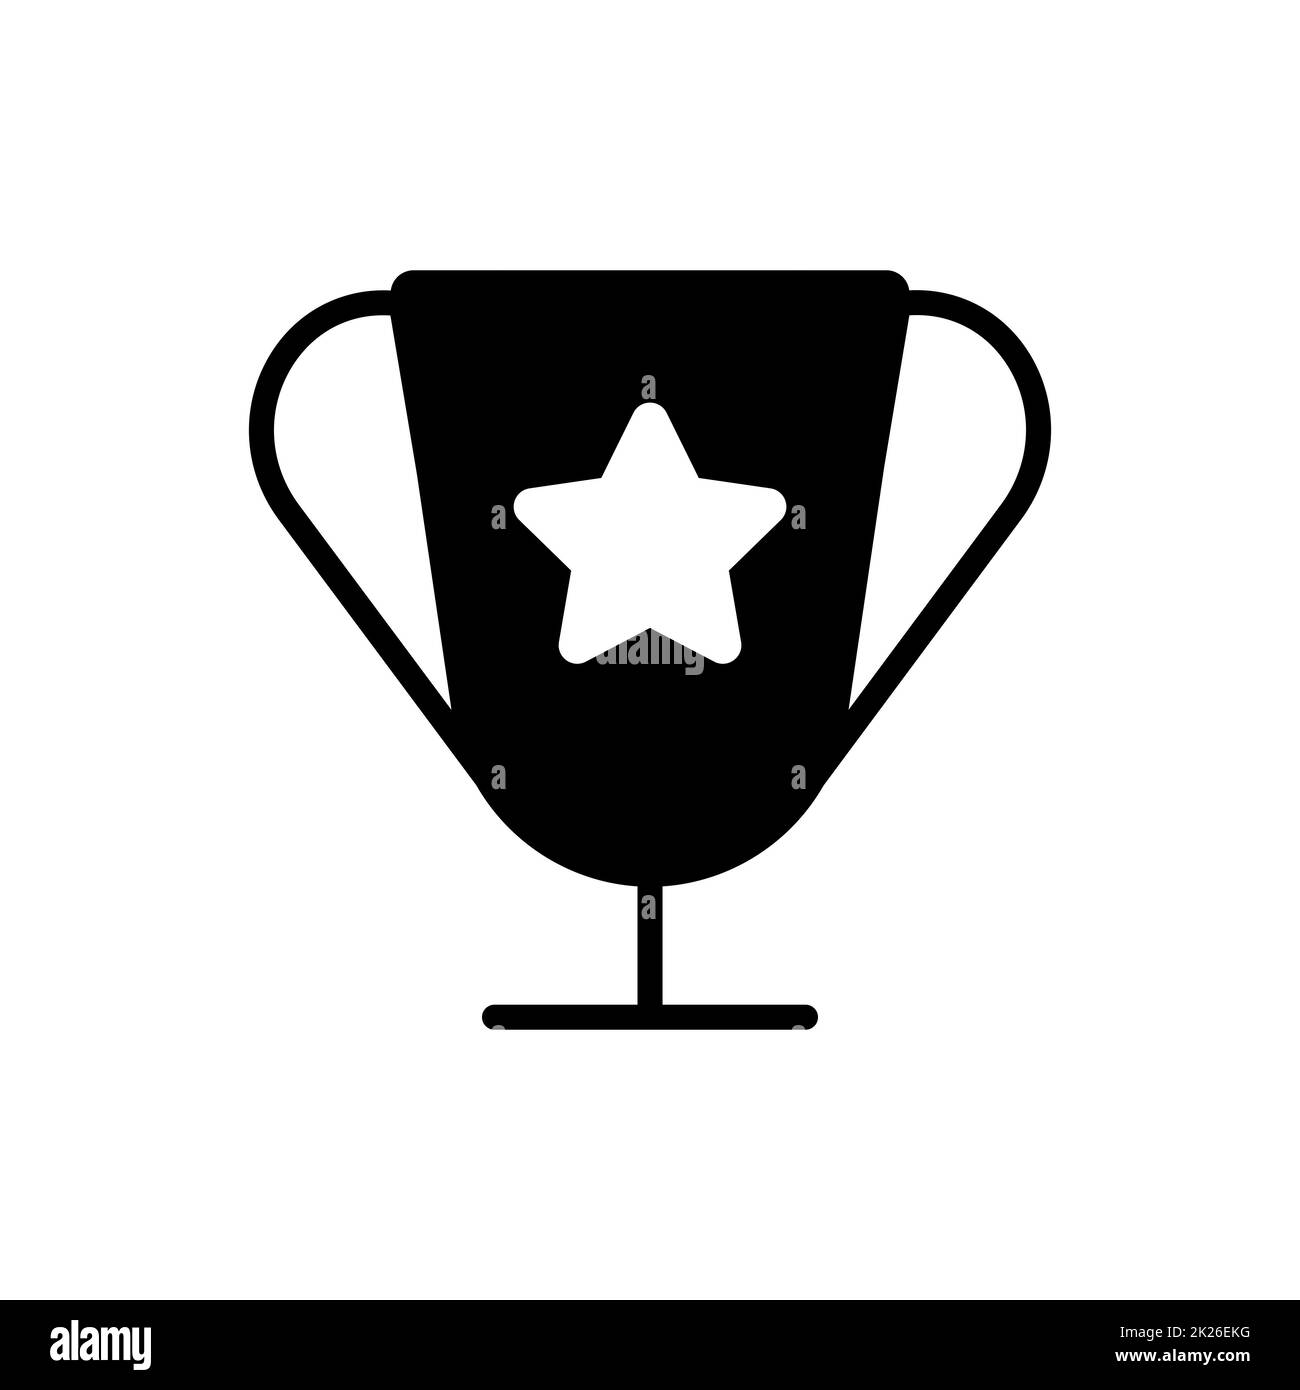 Award vector glyph icon. Pet animal sign Stock Photo